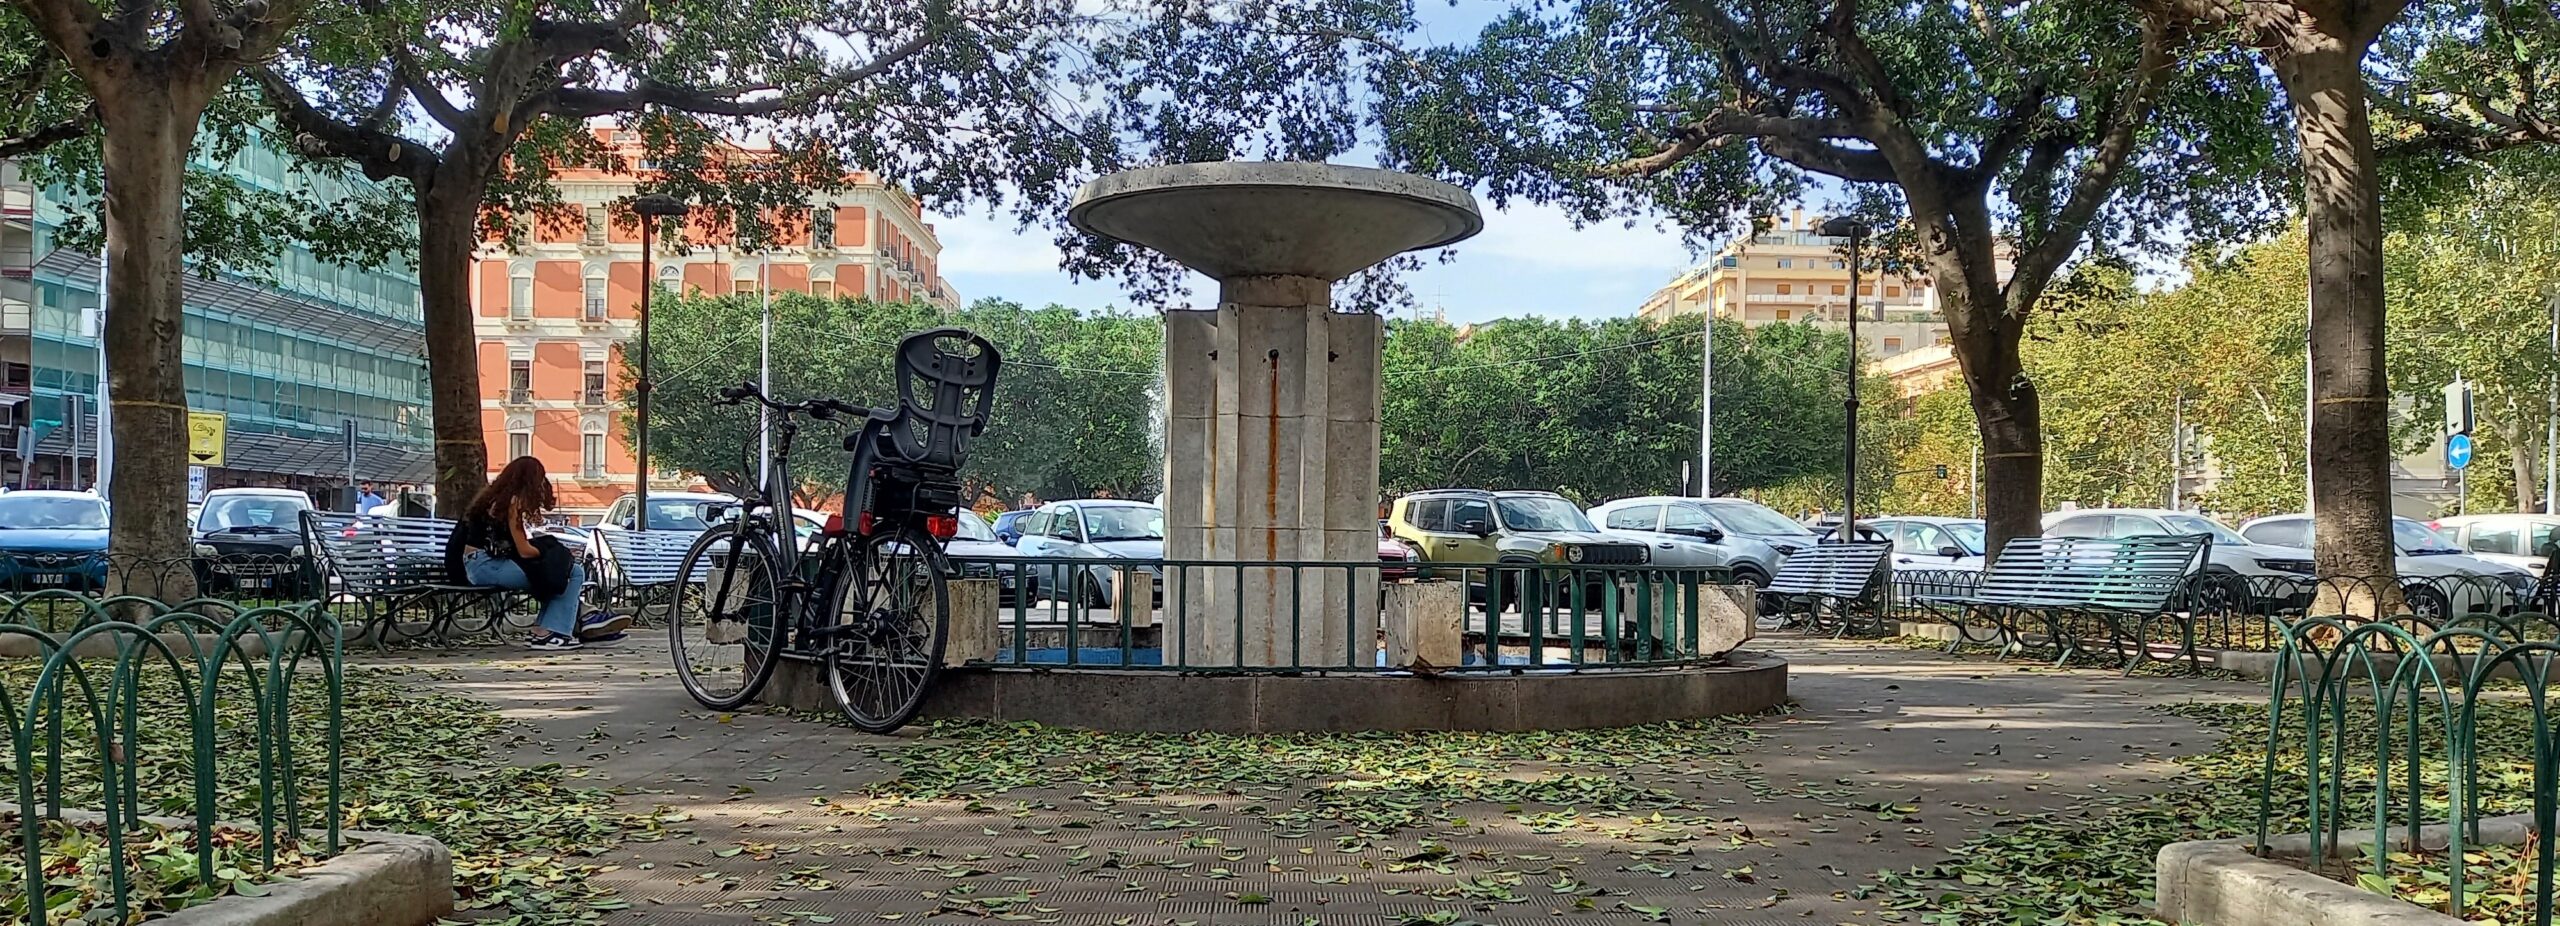 Catania Visionaria Il Parco Ritrovato Piazza Giovanni Verga 1mqdb Verde Urbano Cerchi d'Oro arte involontaria 2